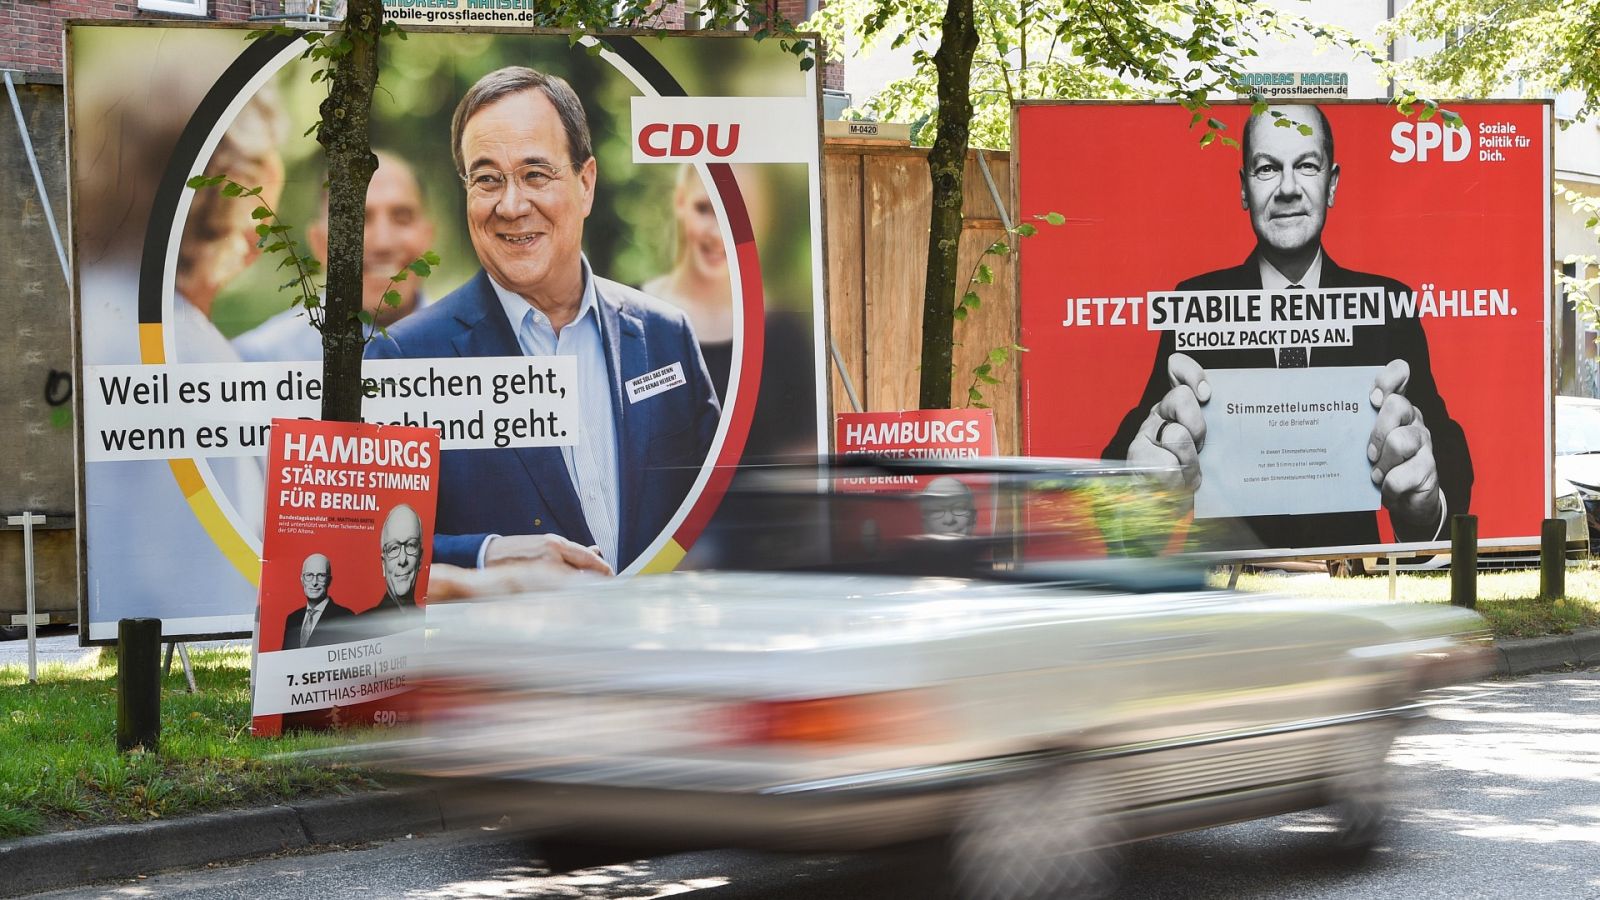 Vuelco en las encuestras en Alemania: el SPD, en cabeza